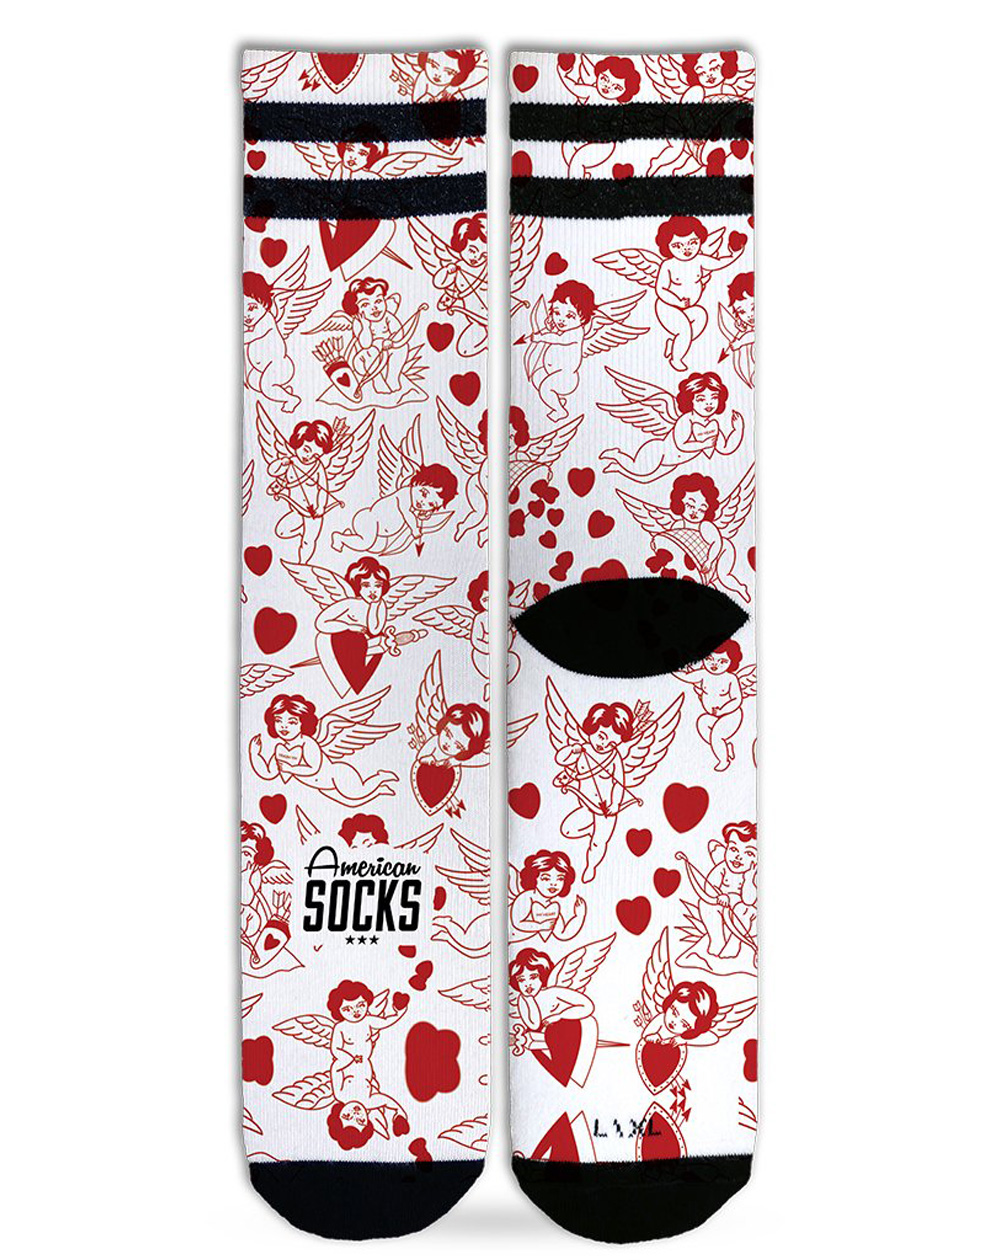 American Socks Valentine Calzini Unisex Adulto